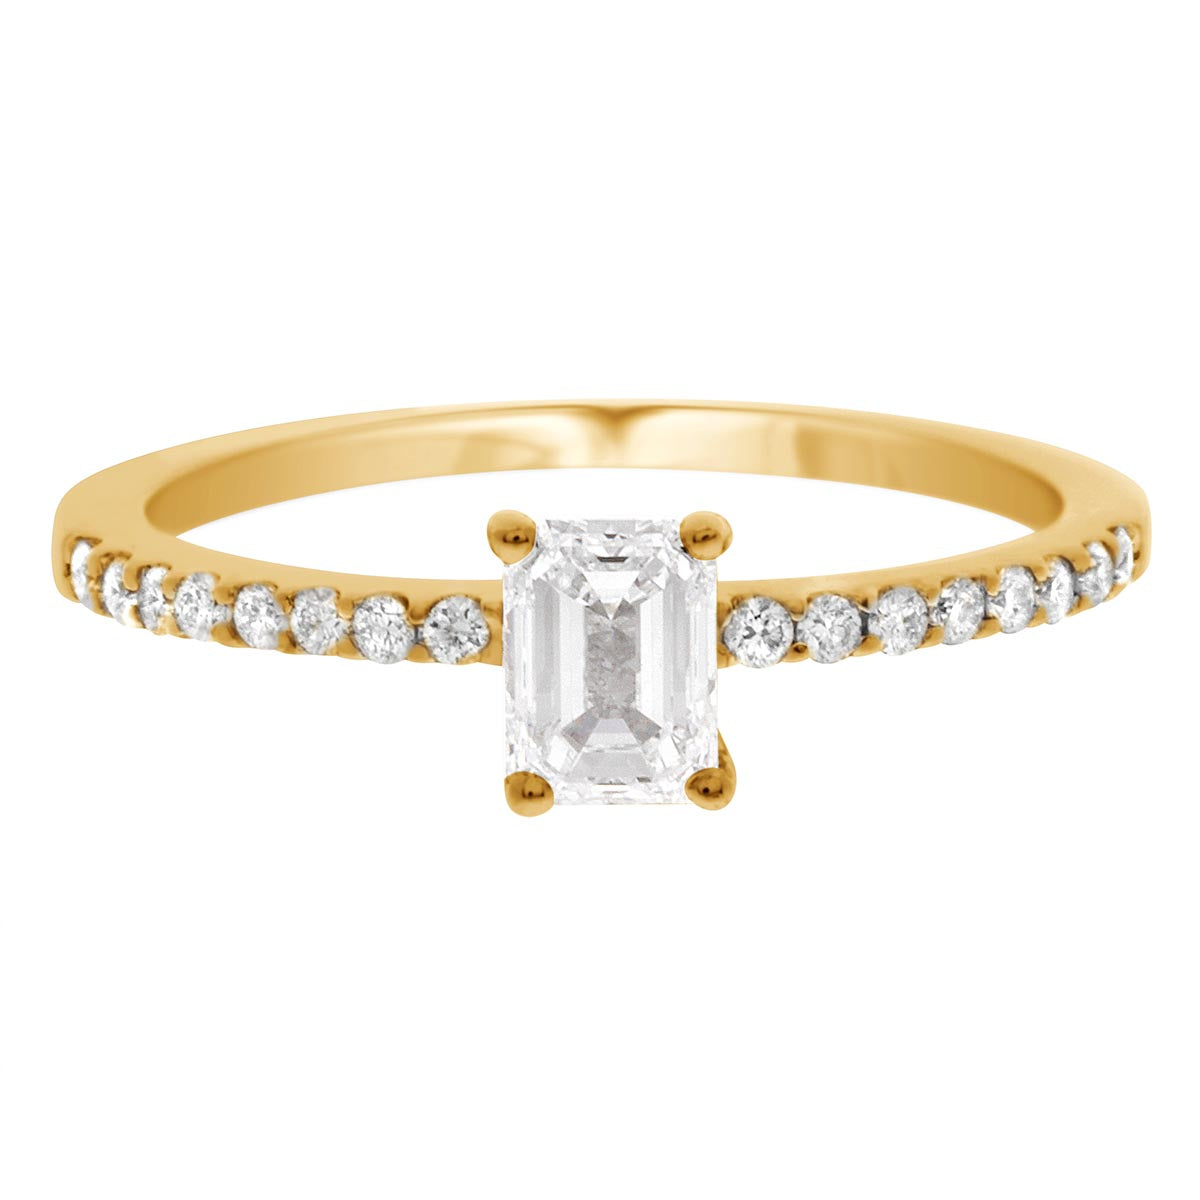 Emerald Cut Diamond Ring IN YELLOW GOLD